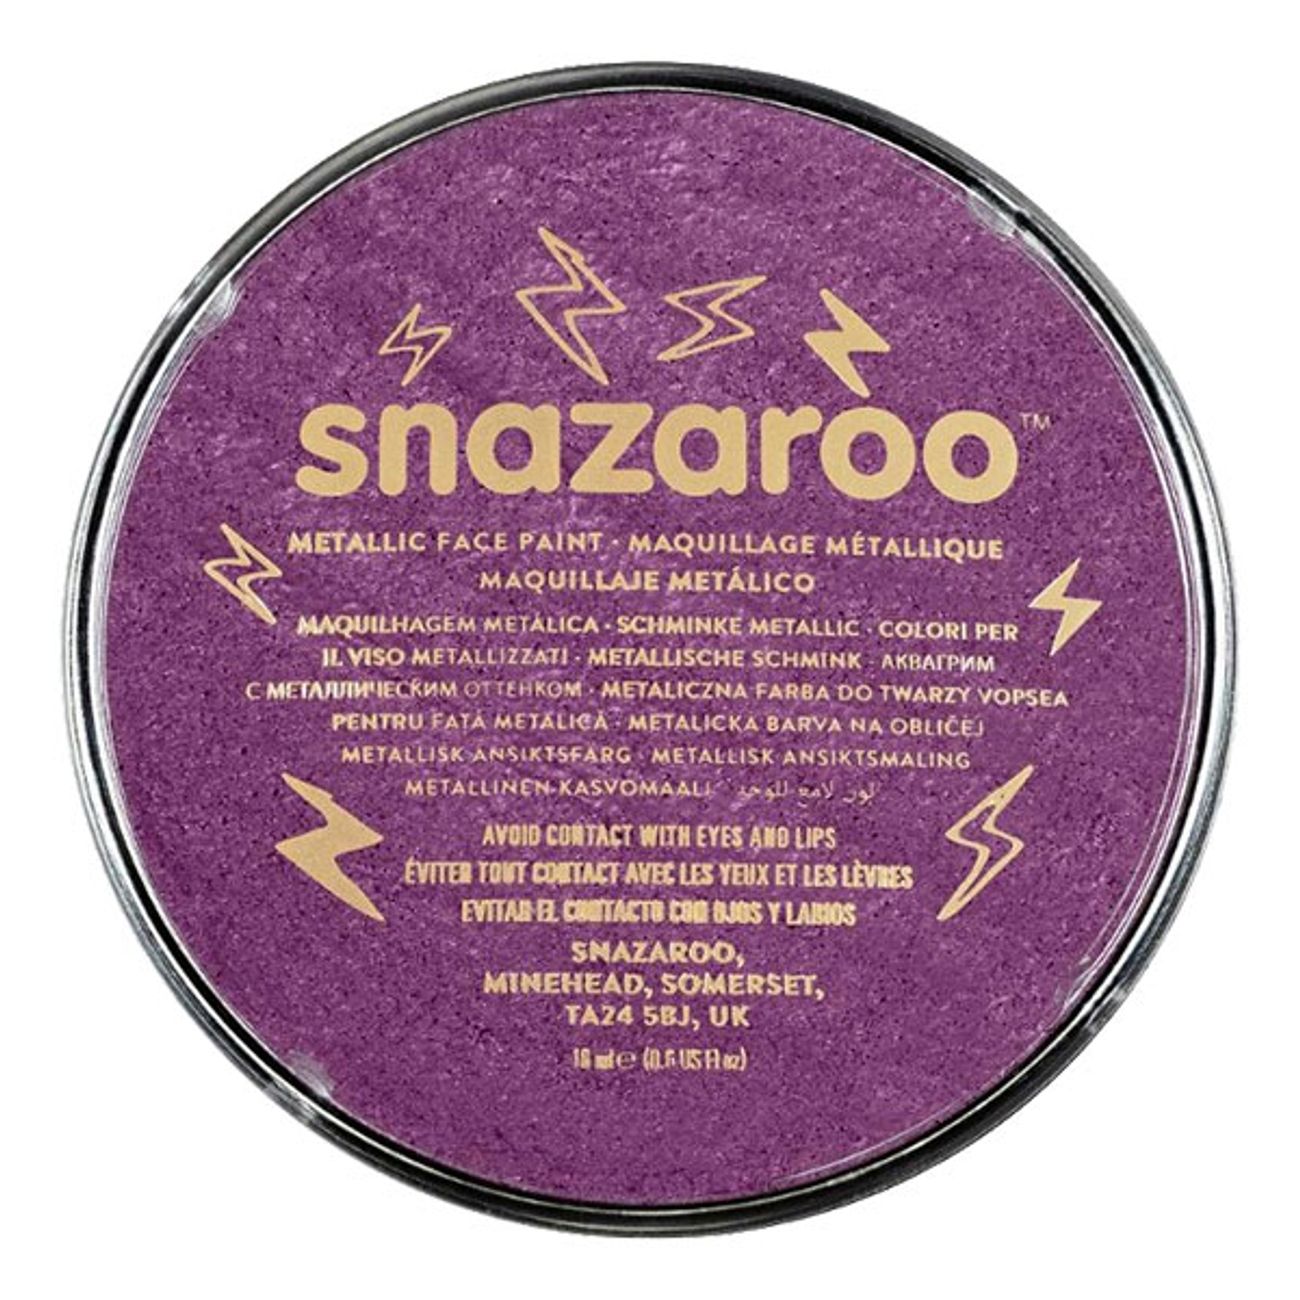 snazaroo-ansiktsfarg-metallic-8